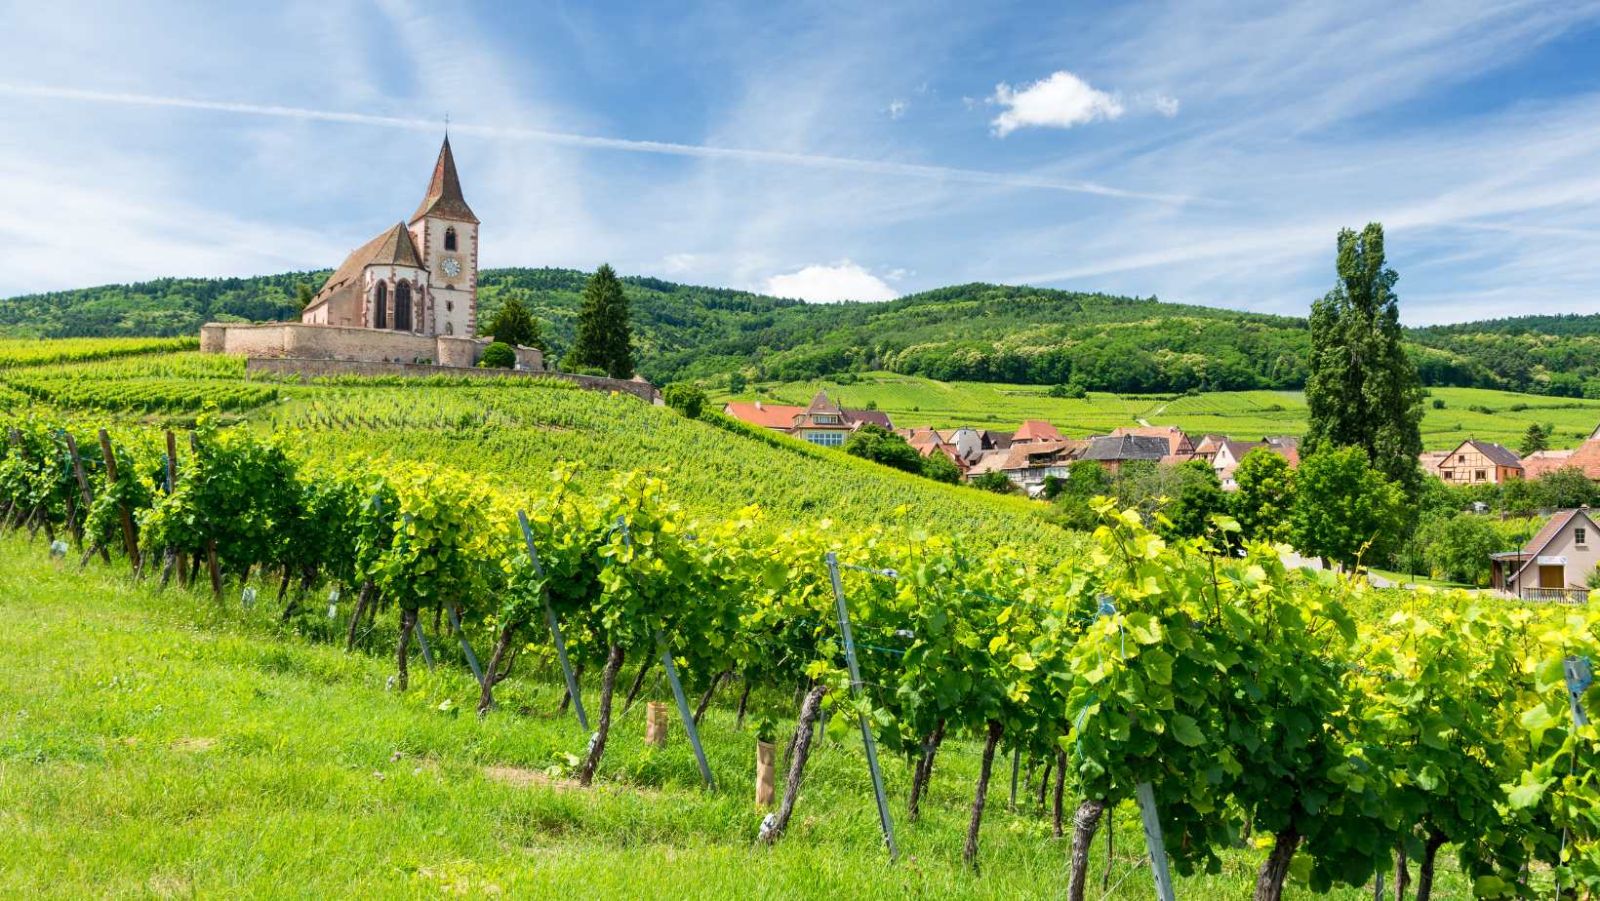 600km de pistes cyclables entre vignobles et plus beaux villages de France, cette région vaut le détour